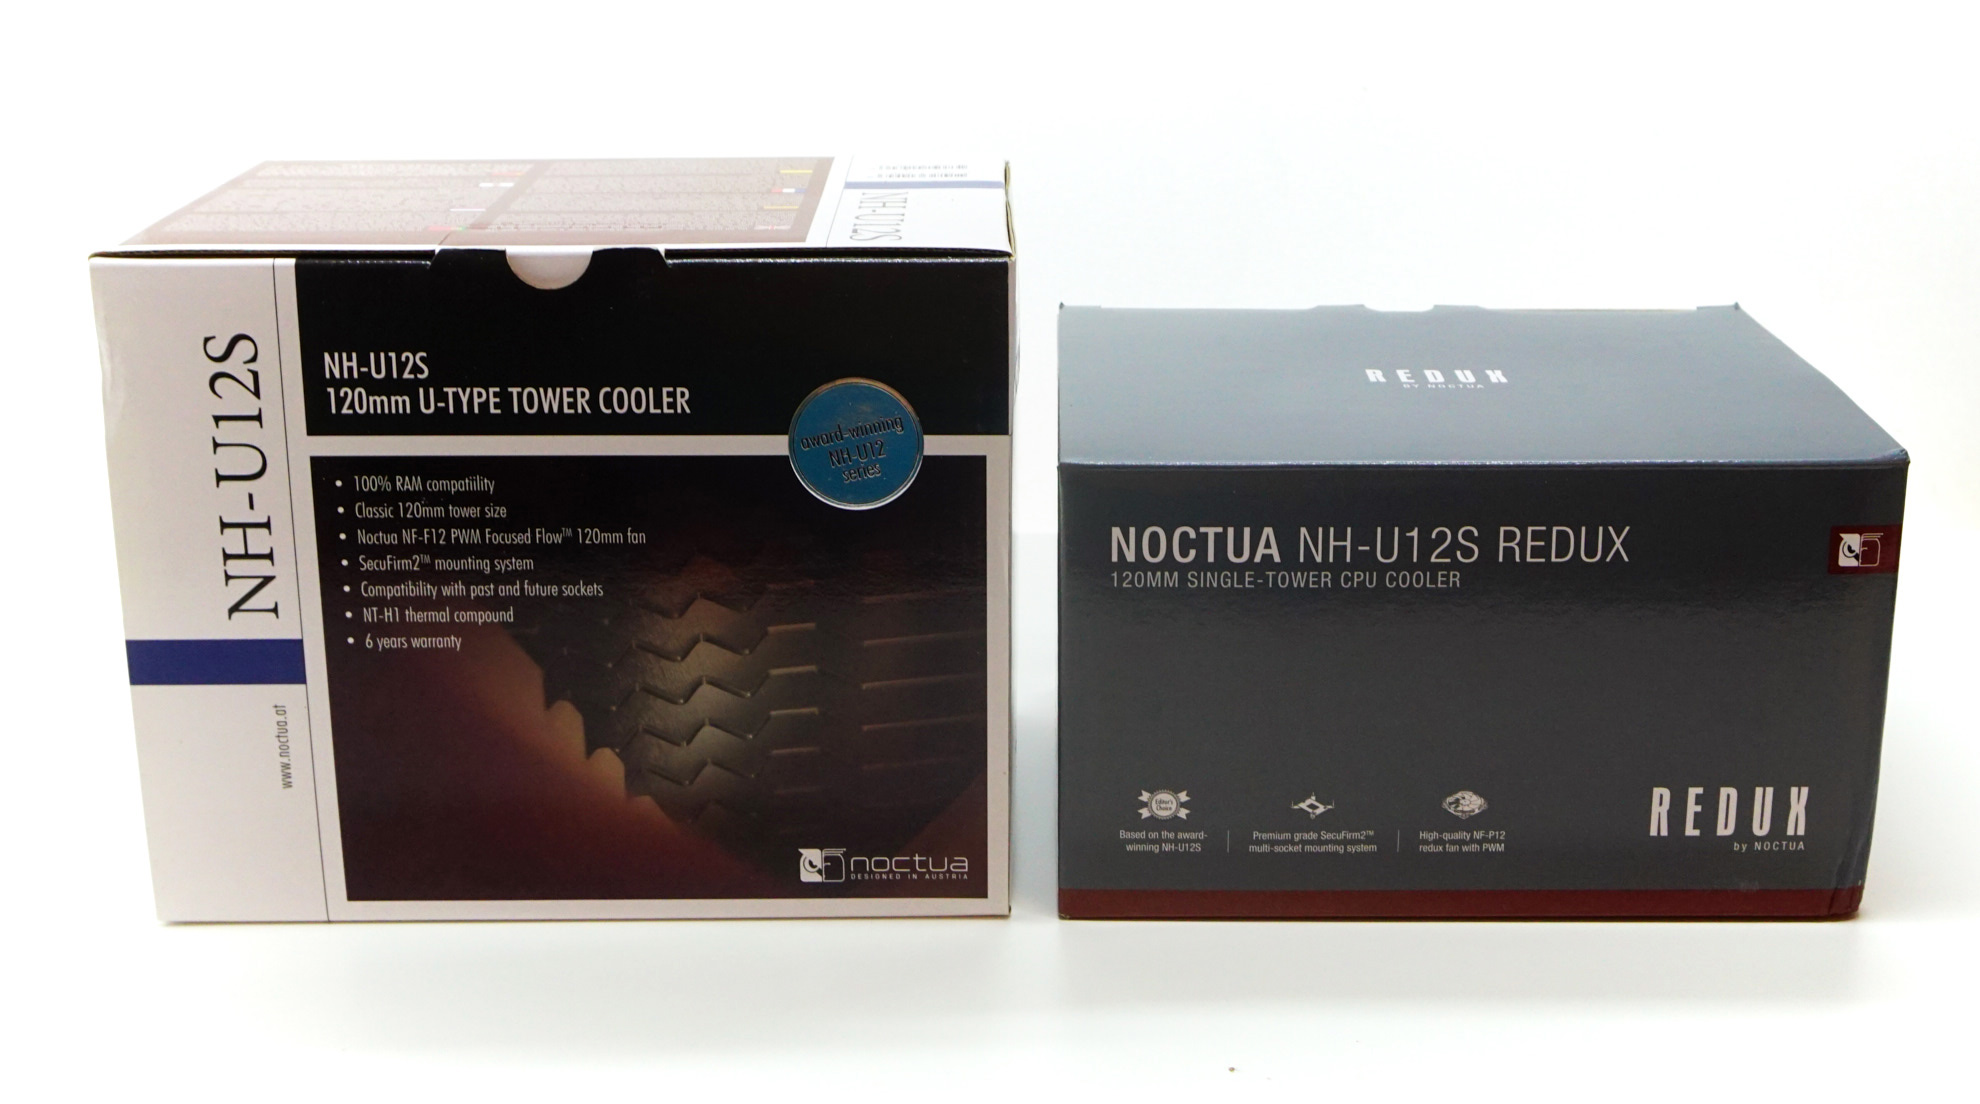 Review: Noctua NH-U12S redux - Cooling 